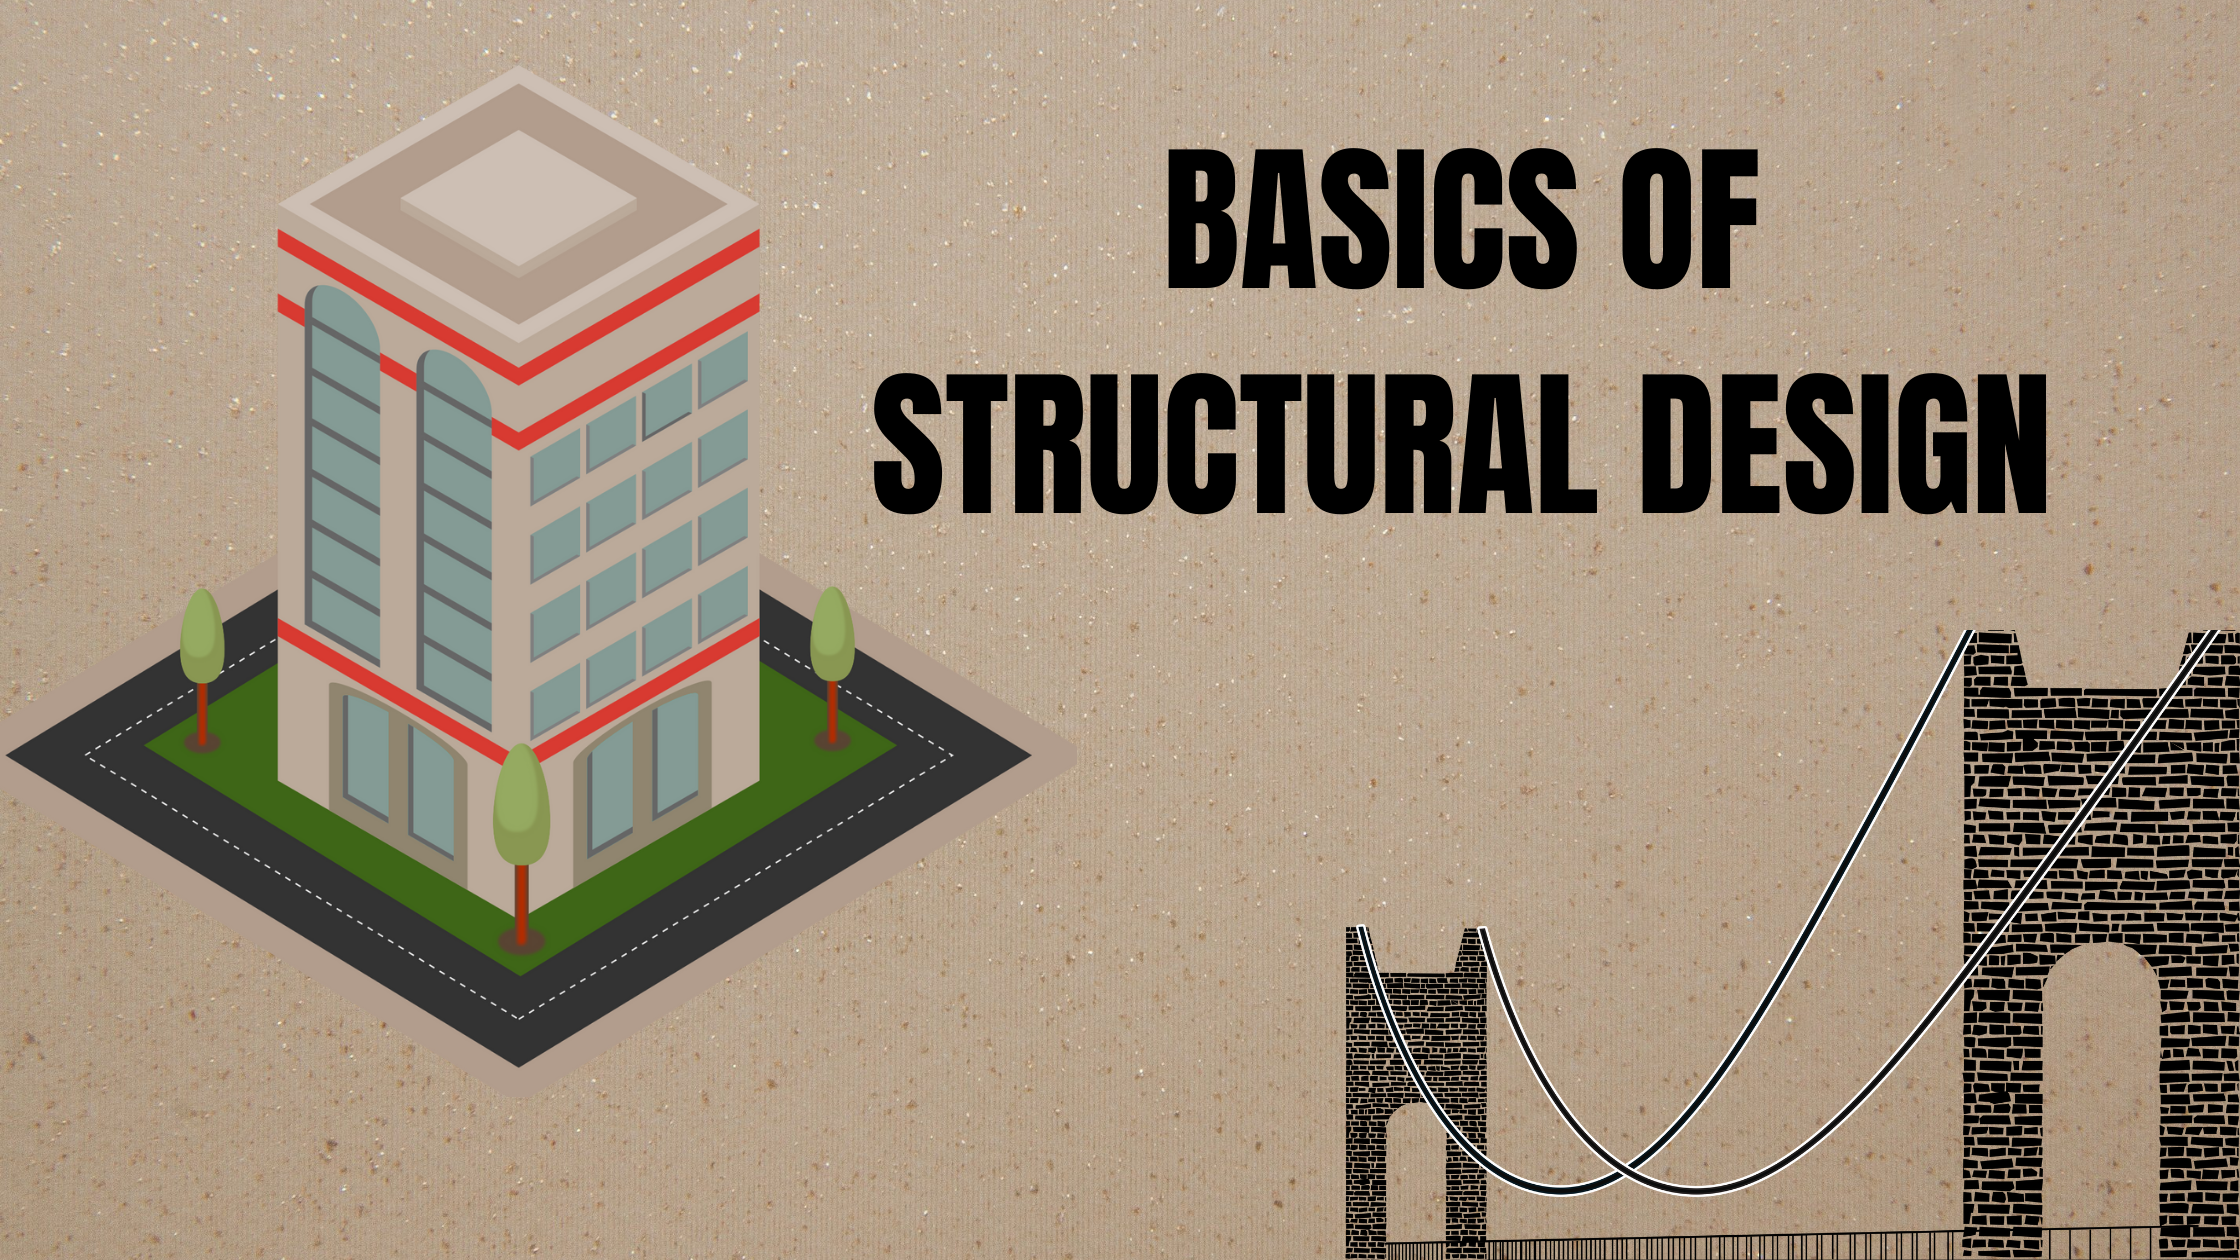 BASICS OF STRUCTURAL DESIGN